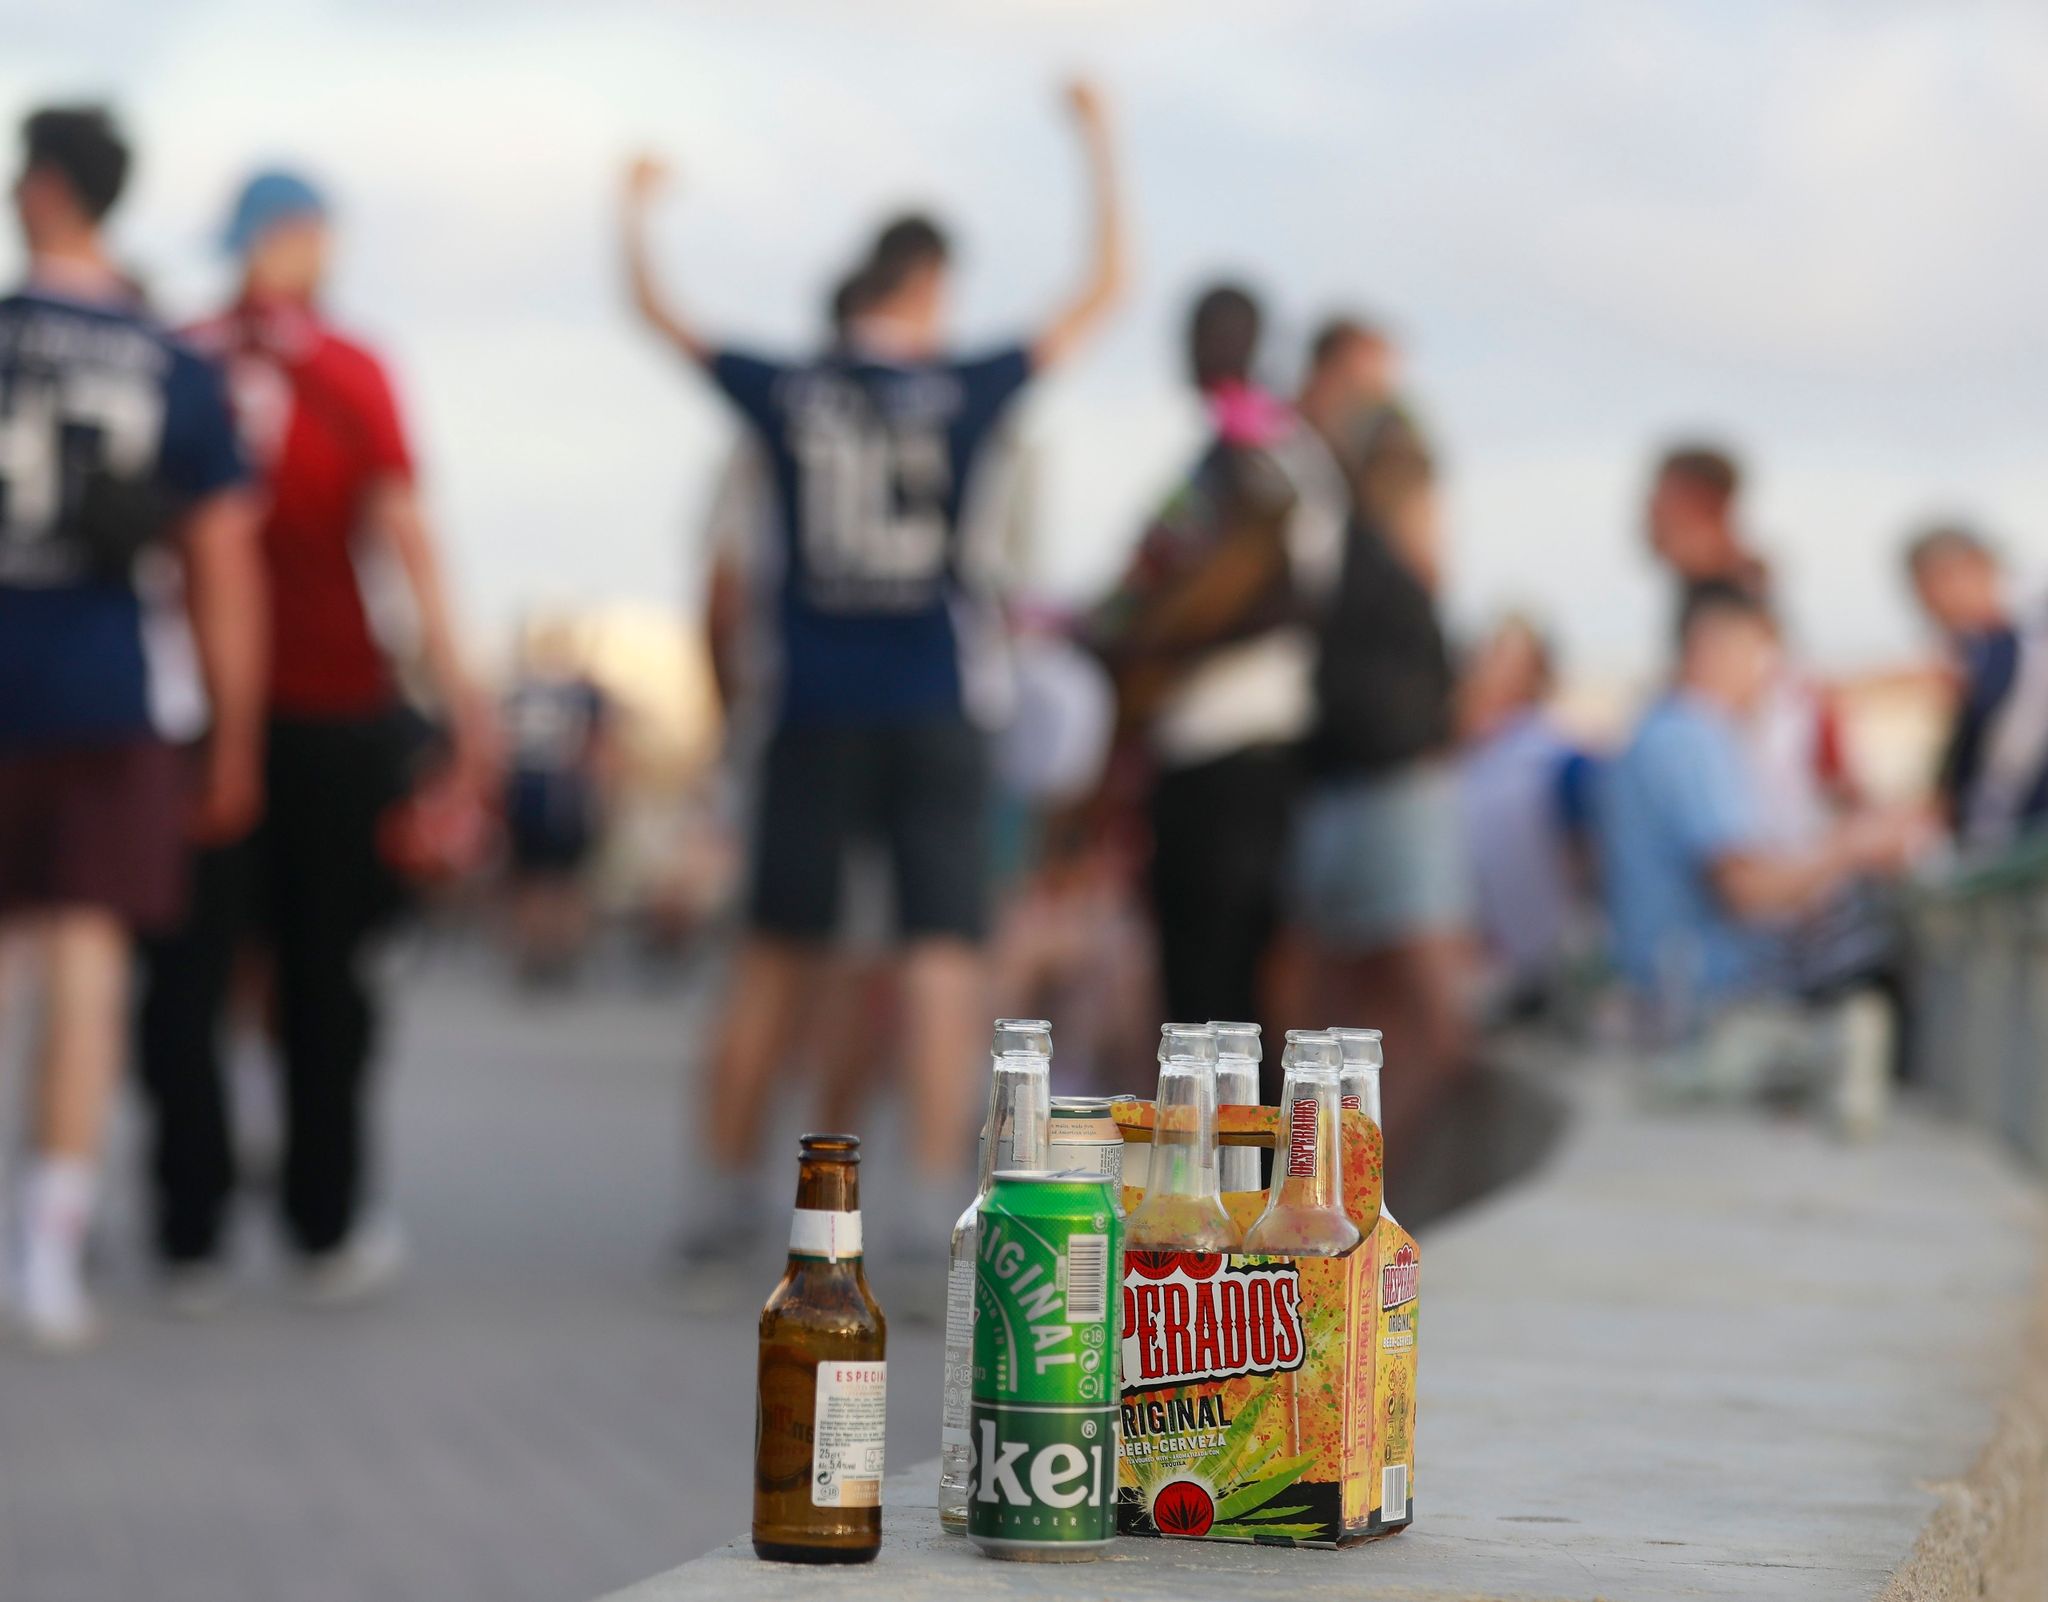 Menschen haben sich am Abend an der Promenade am Strand von Arenal versammelt und trinken Alkohol.